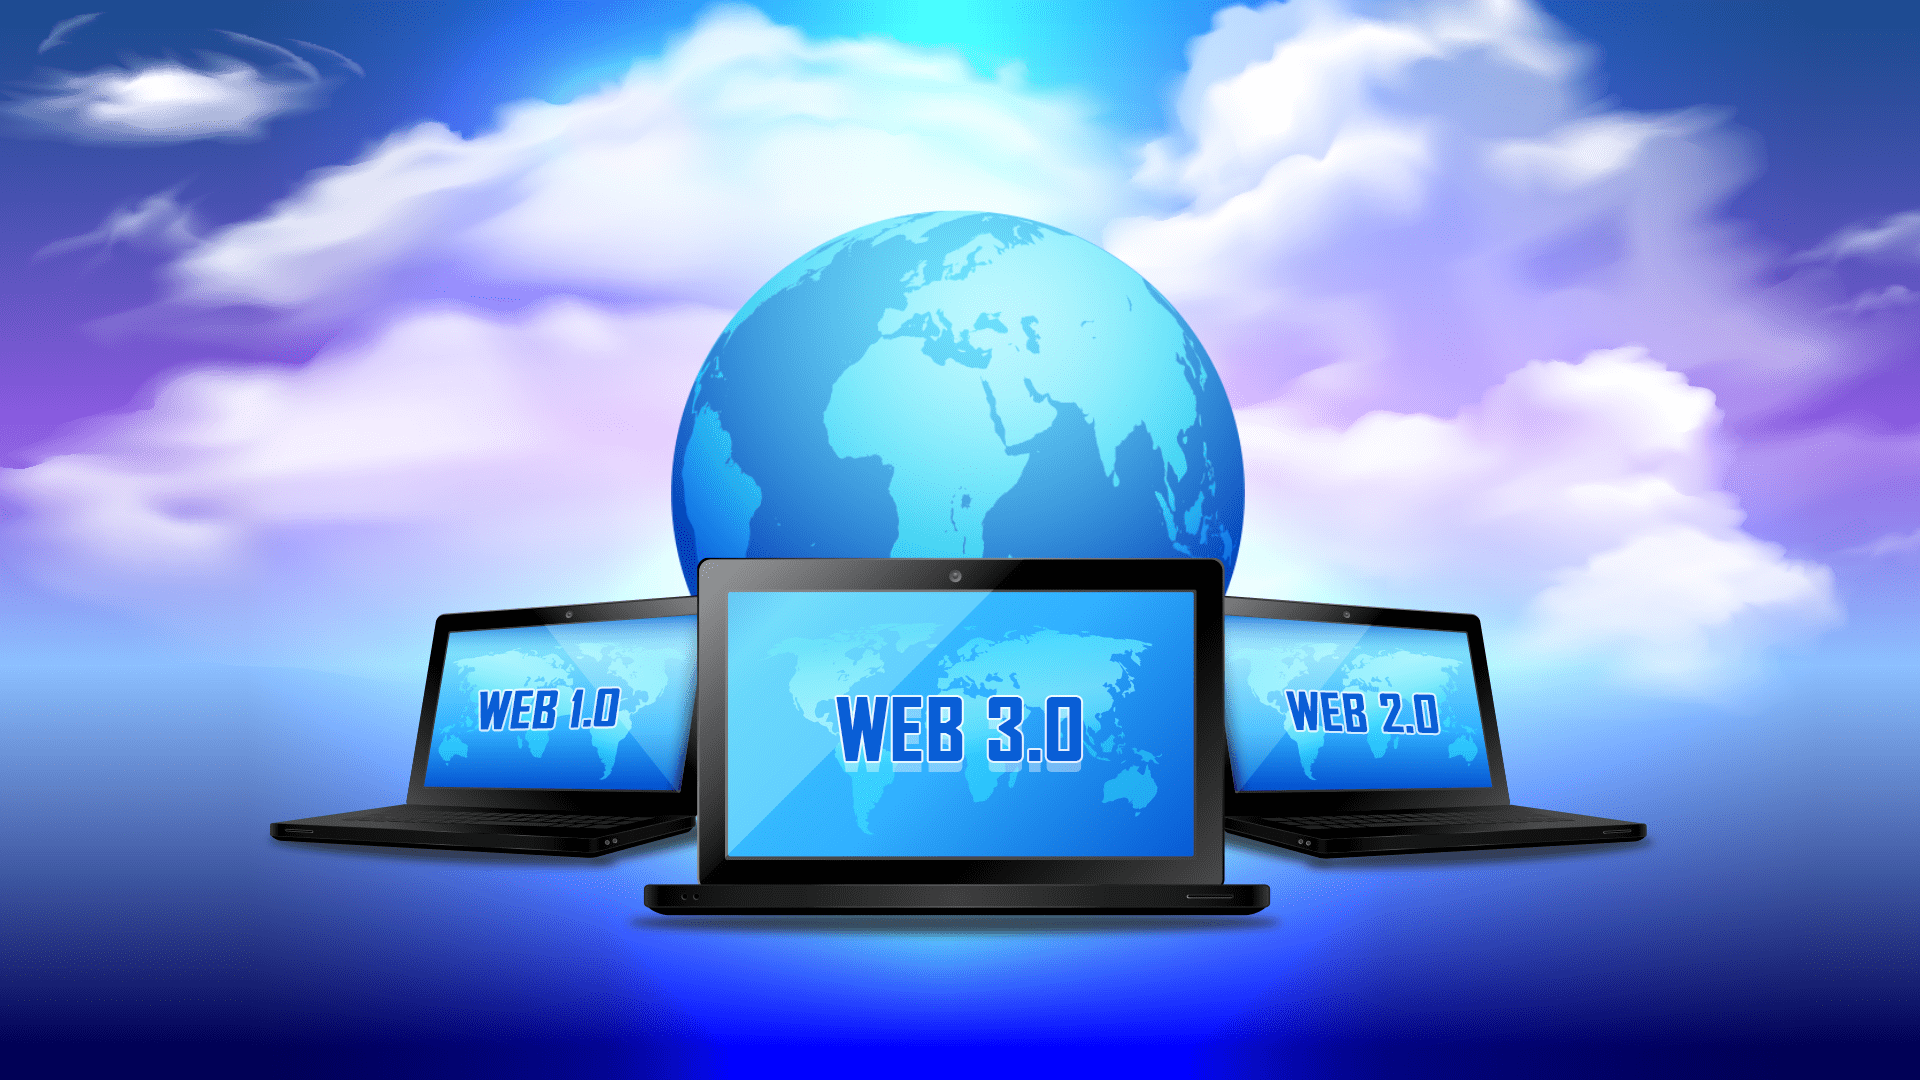 web development: Web 1.0, Web 2.0, and Web 3.0